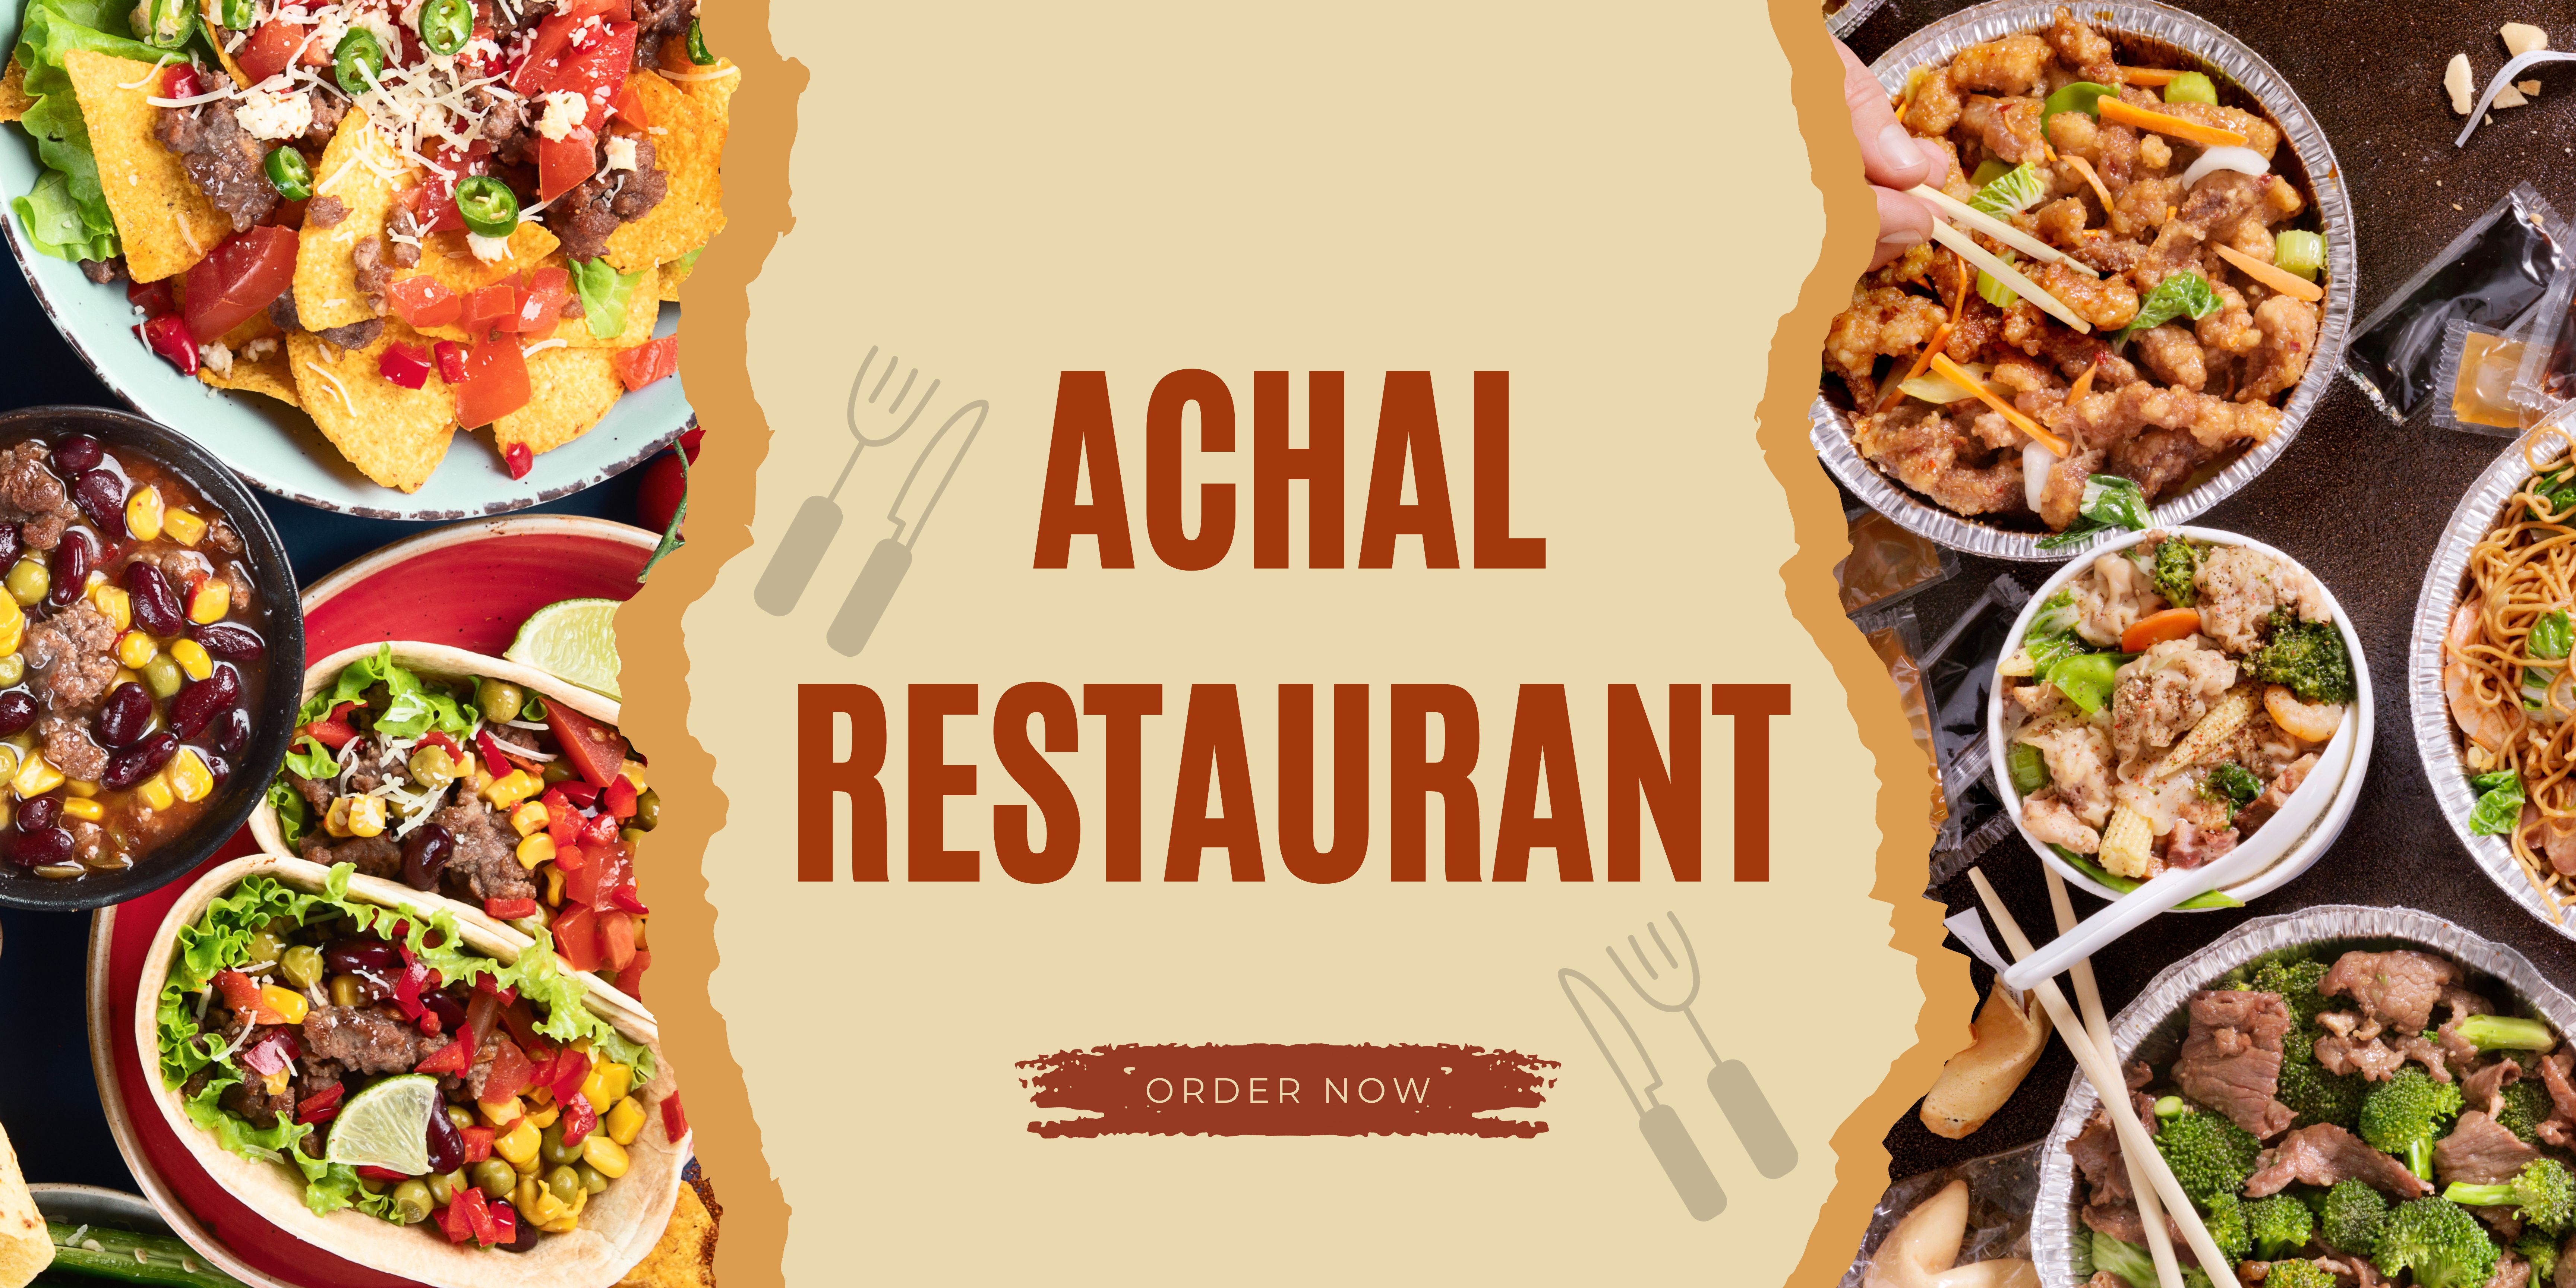 Achalrestaurant